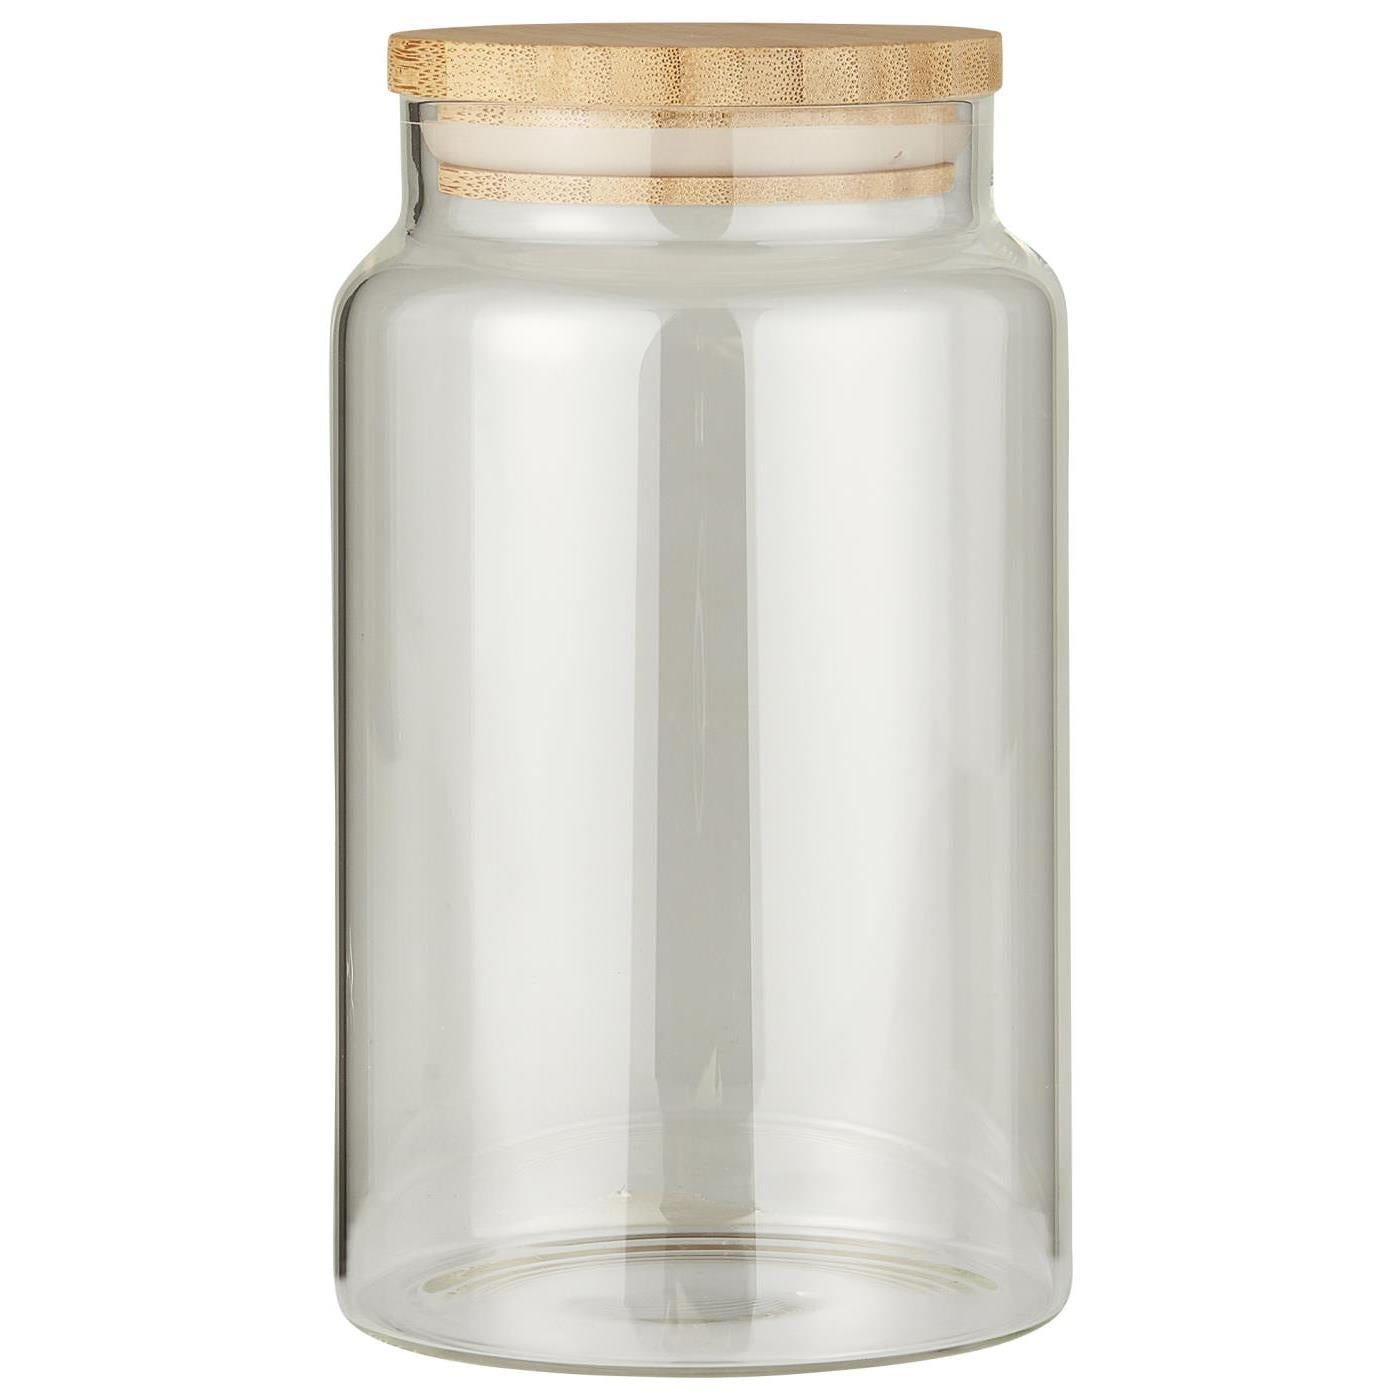 Ib Laursen - Glaskrukke m/bambuslåg i 3 størrelser - H17 x Ø9,8 cm